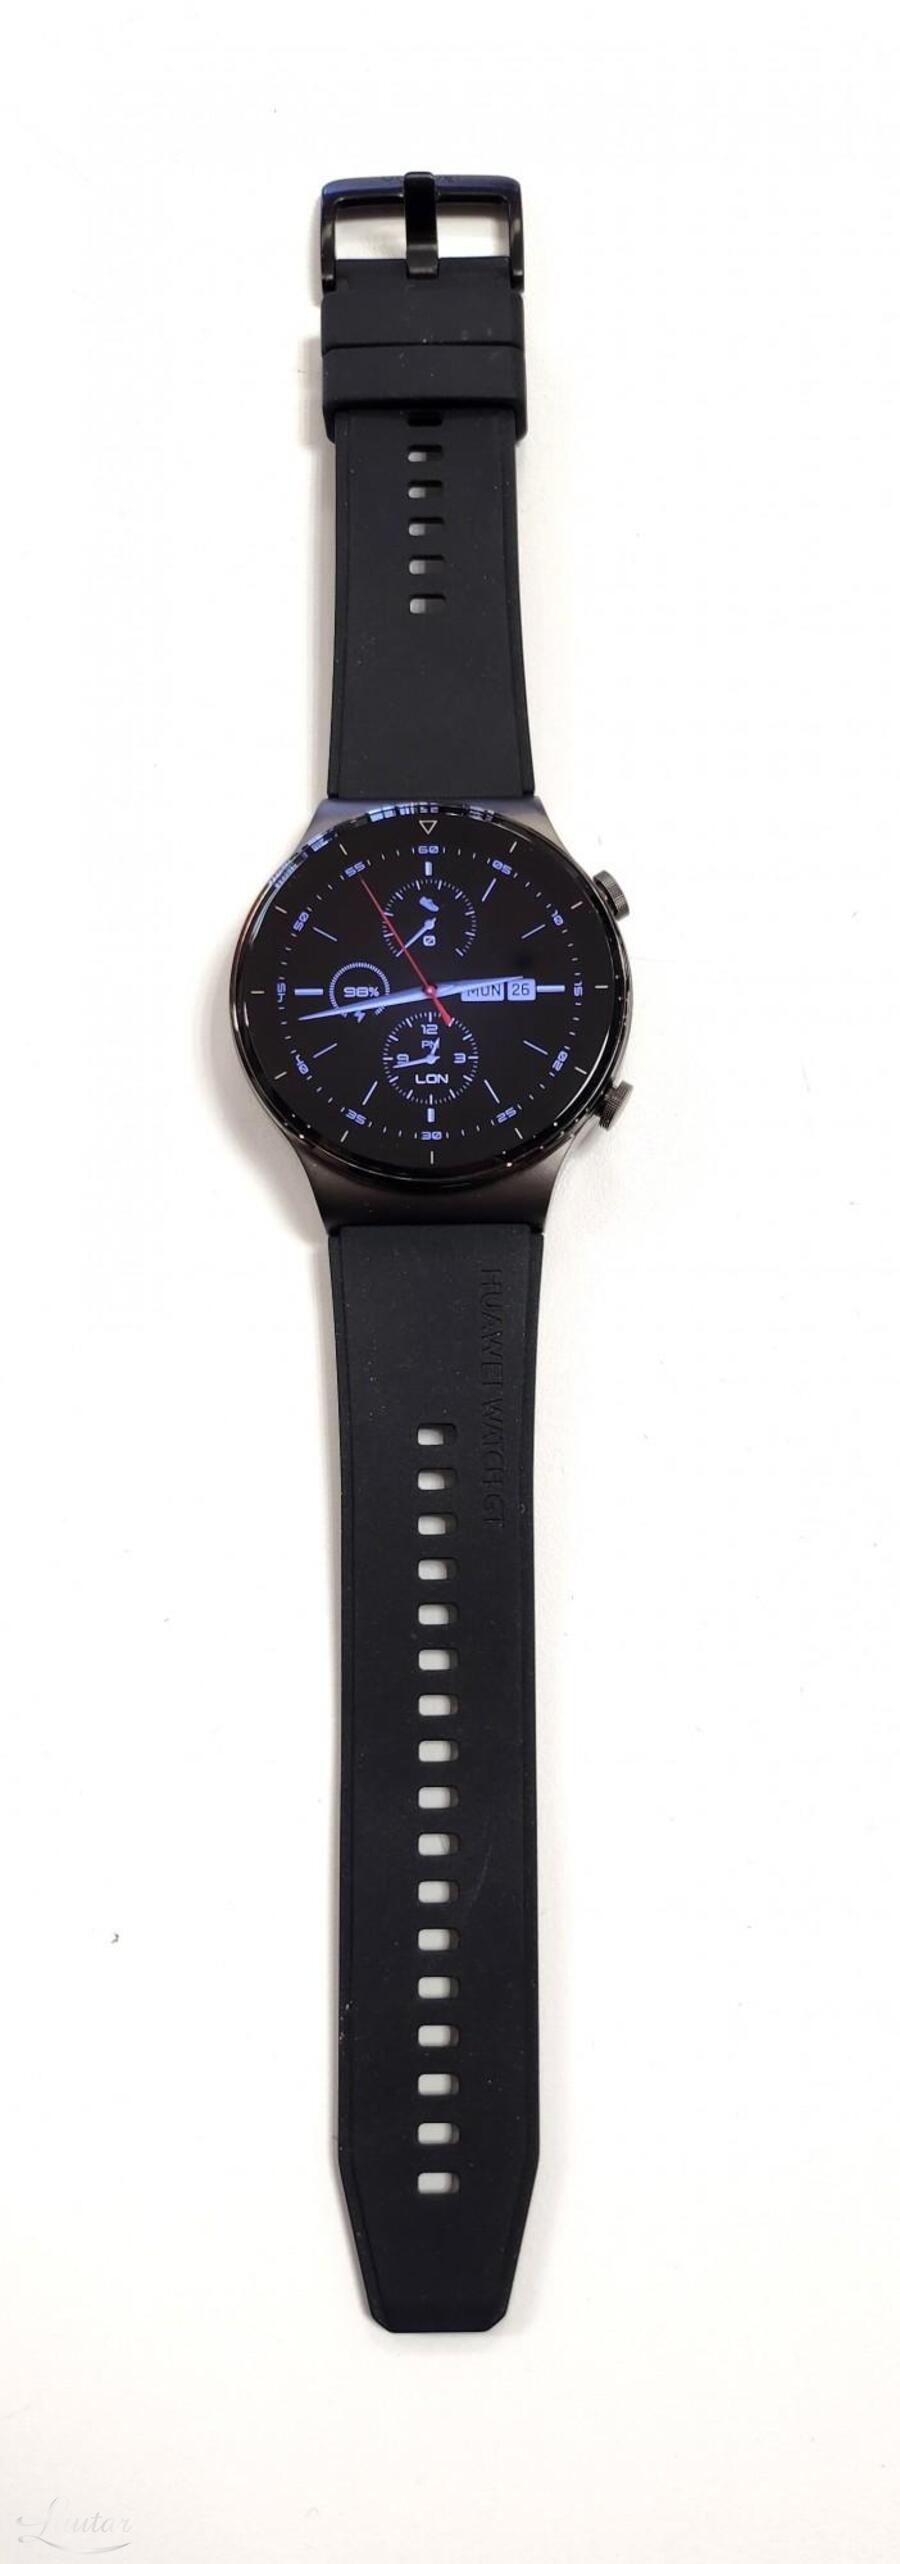 Nutikell Huawei Watch GT 2 Pro